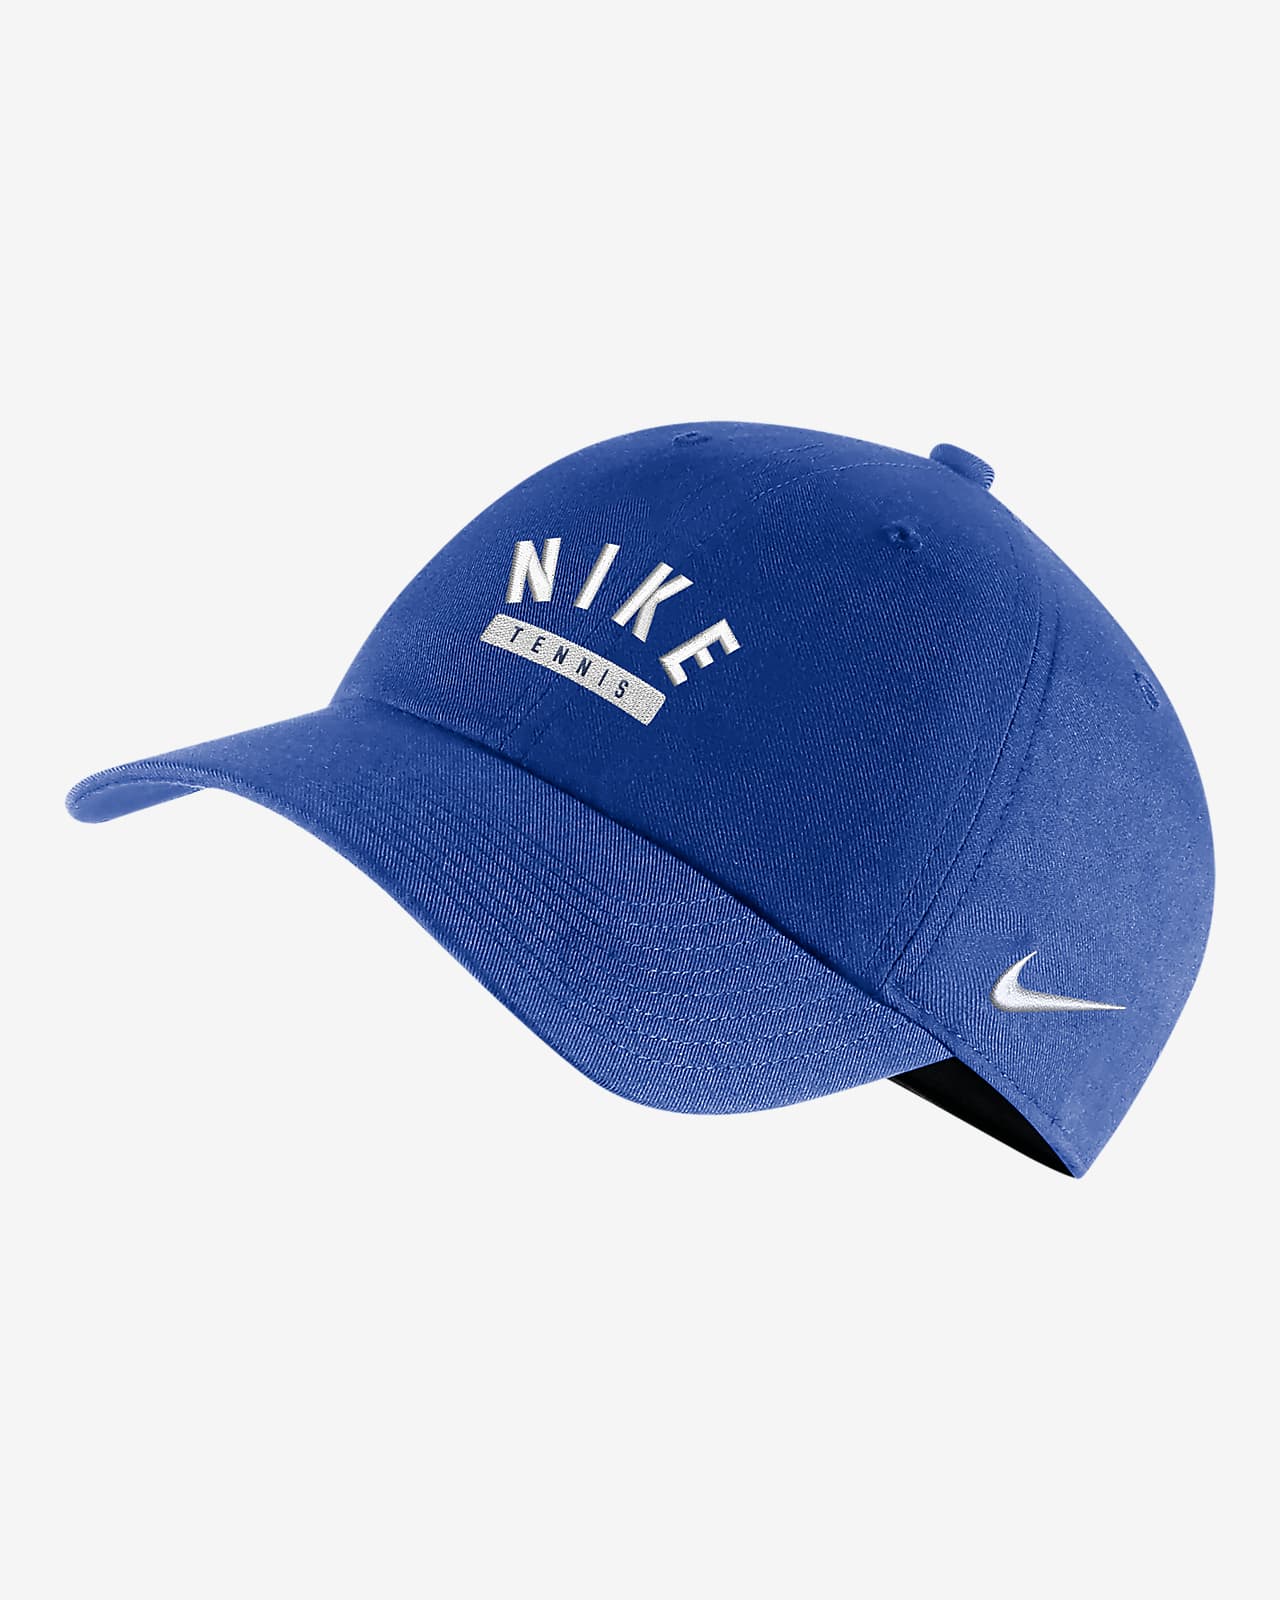 Gorra de tenis Campus Nike